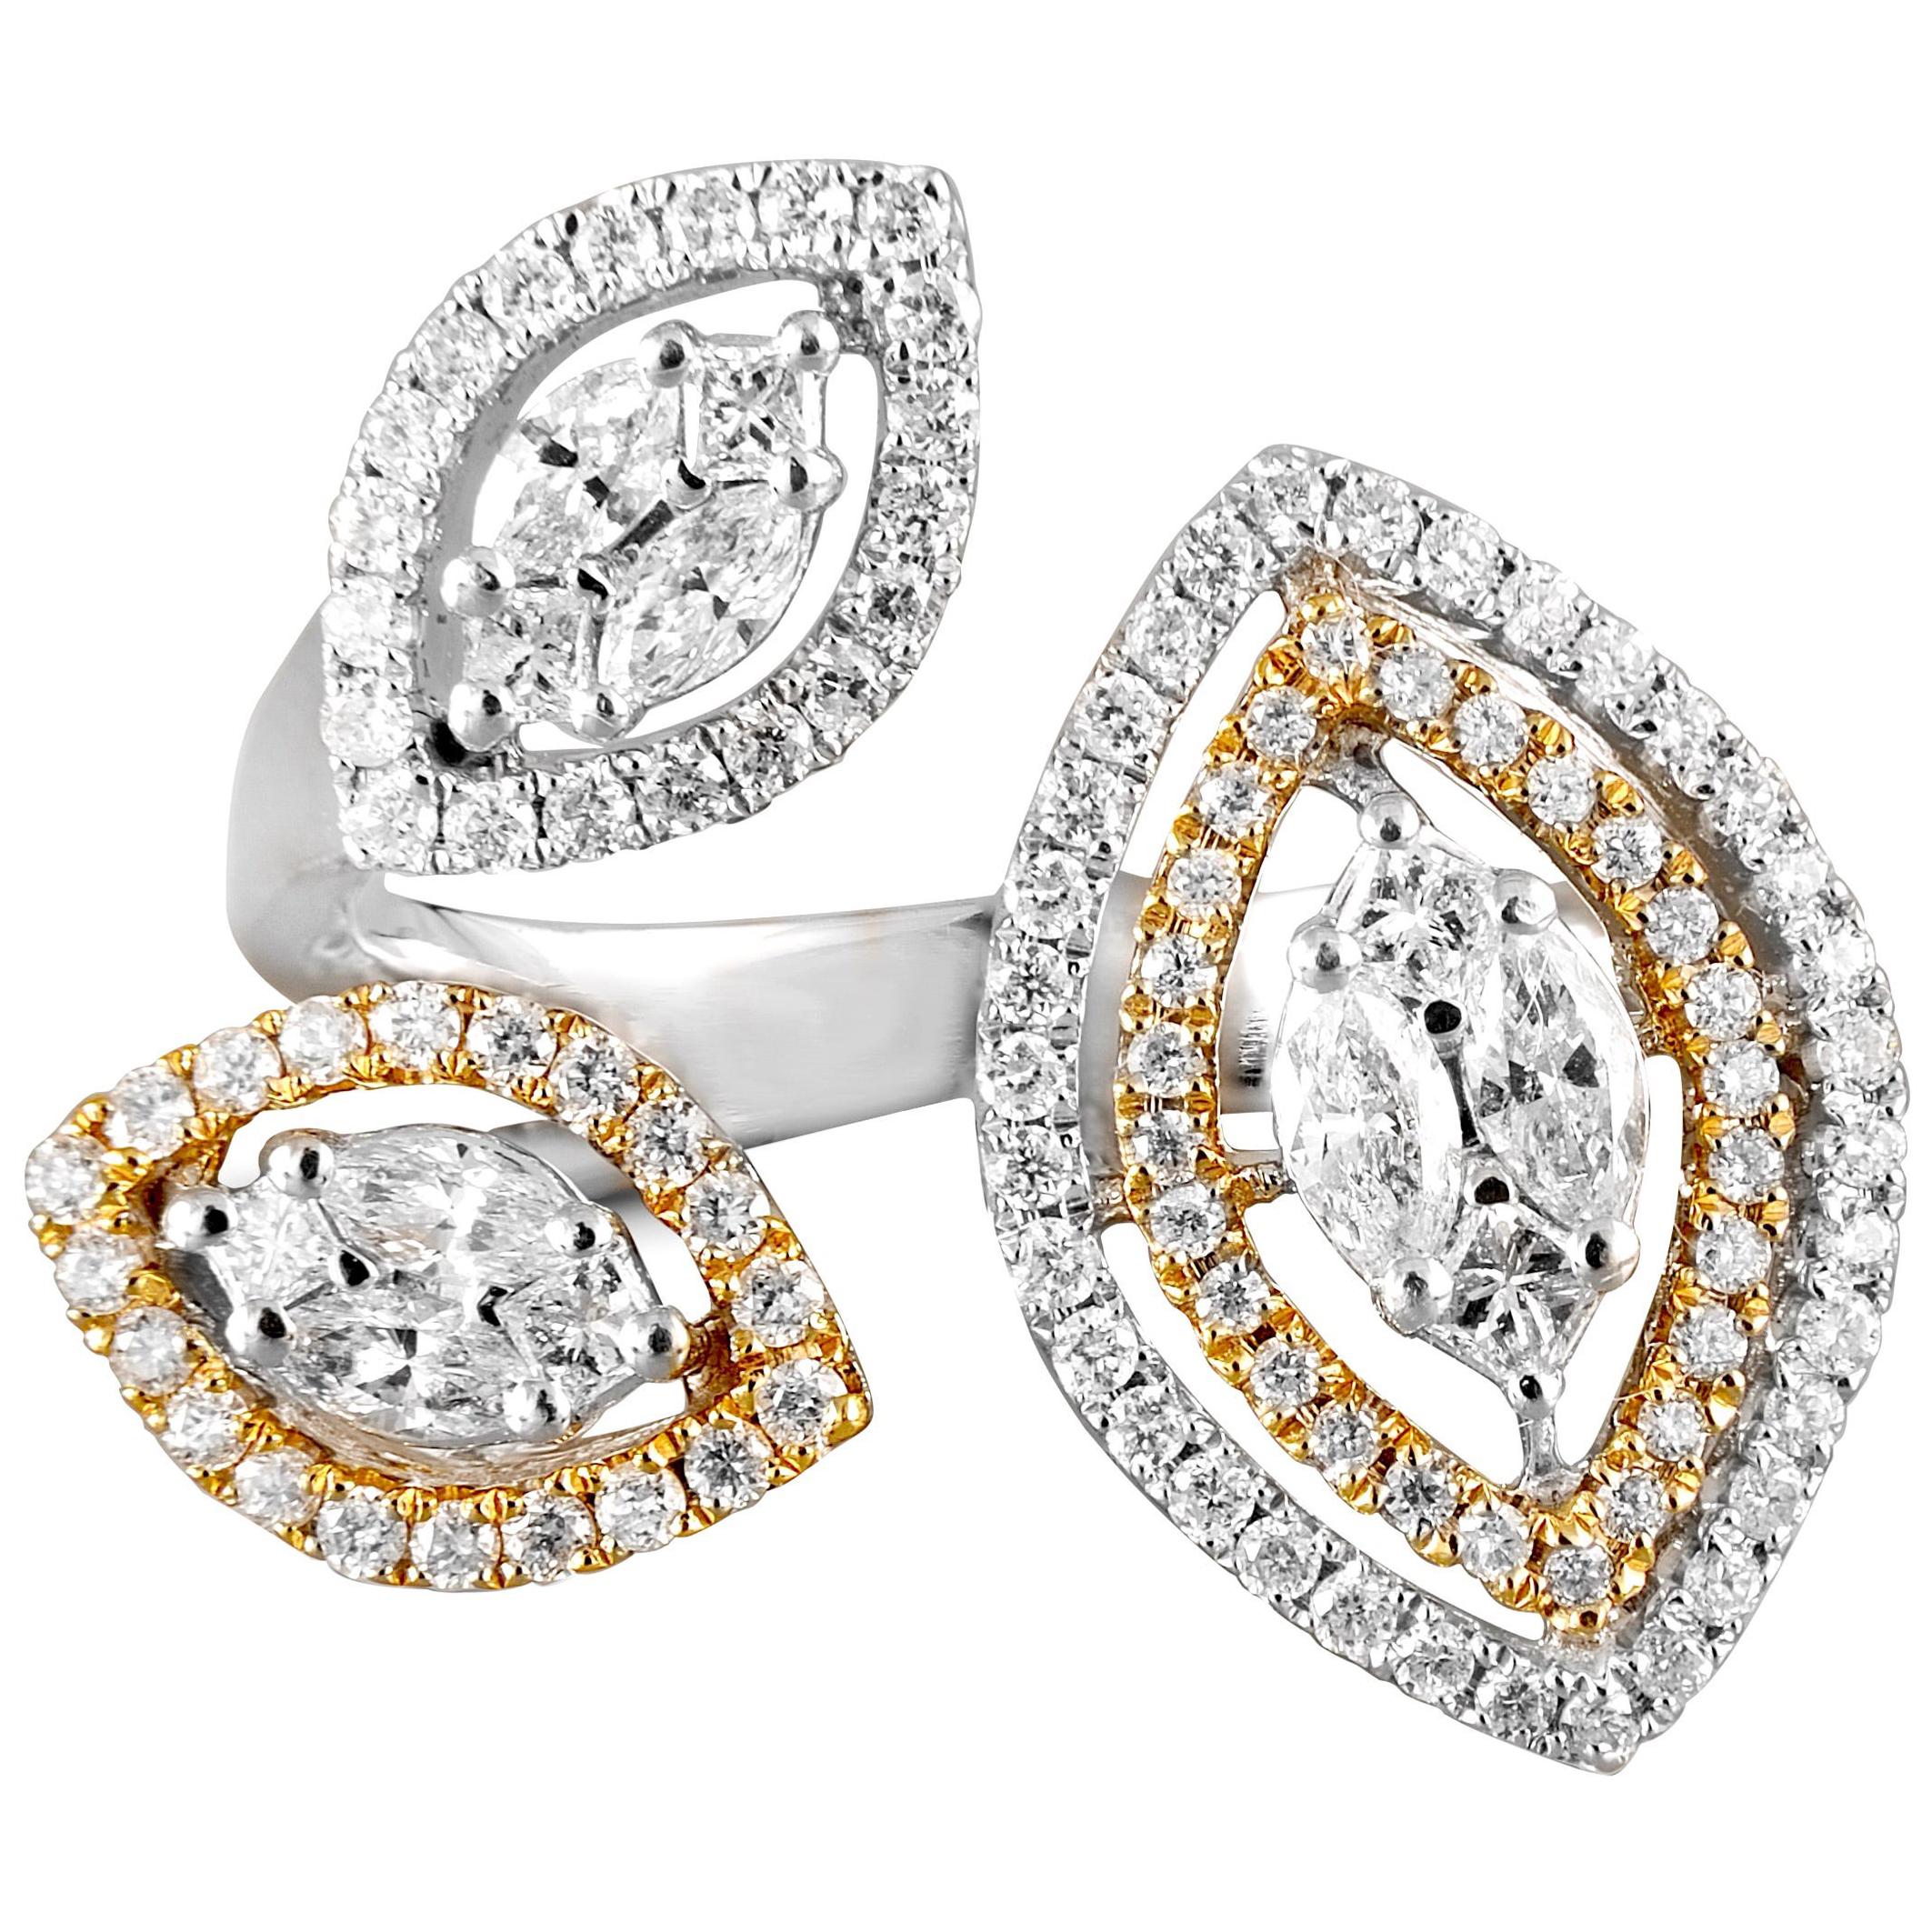 18 Karat Gold White Diamond Cocktail Ring